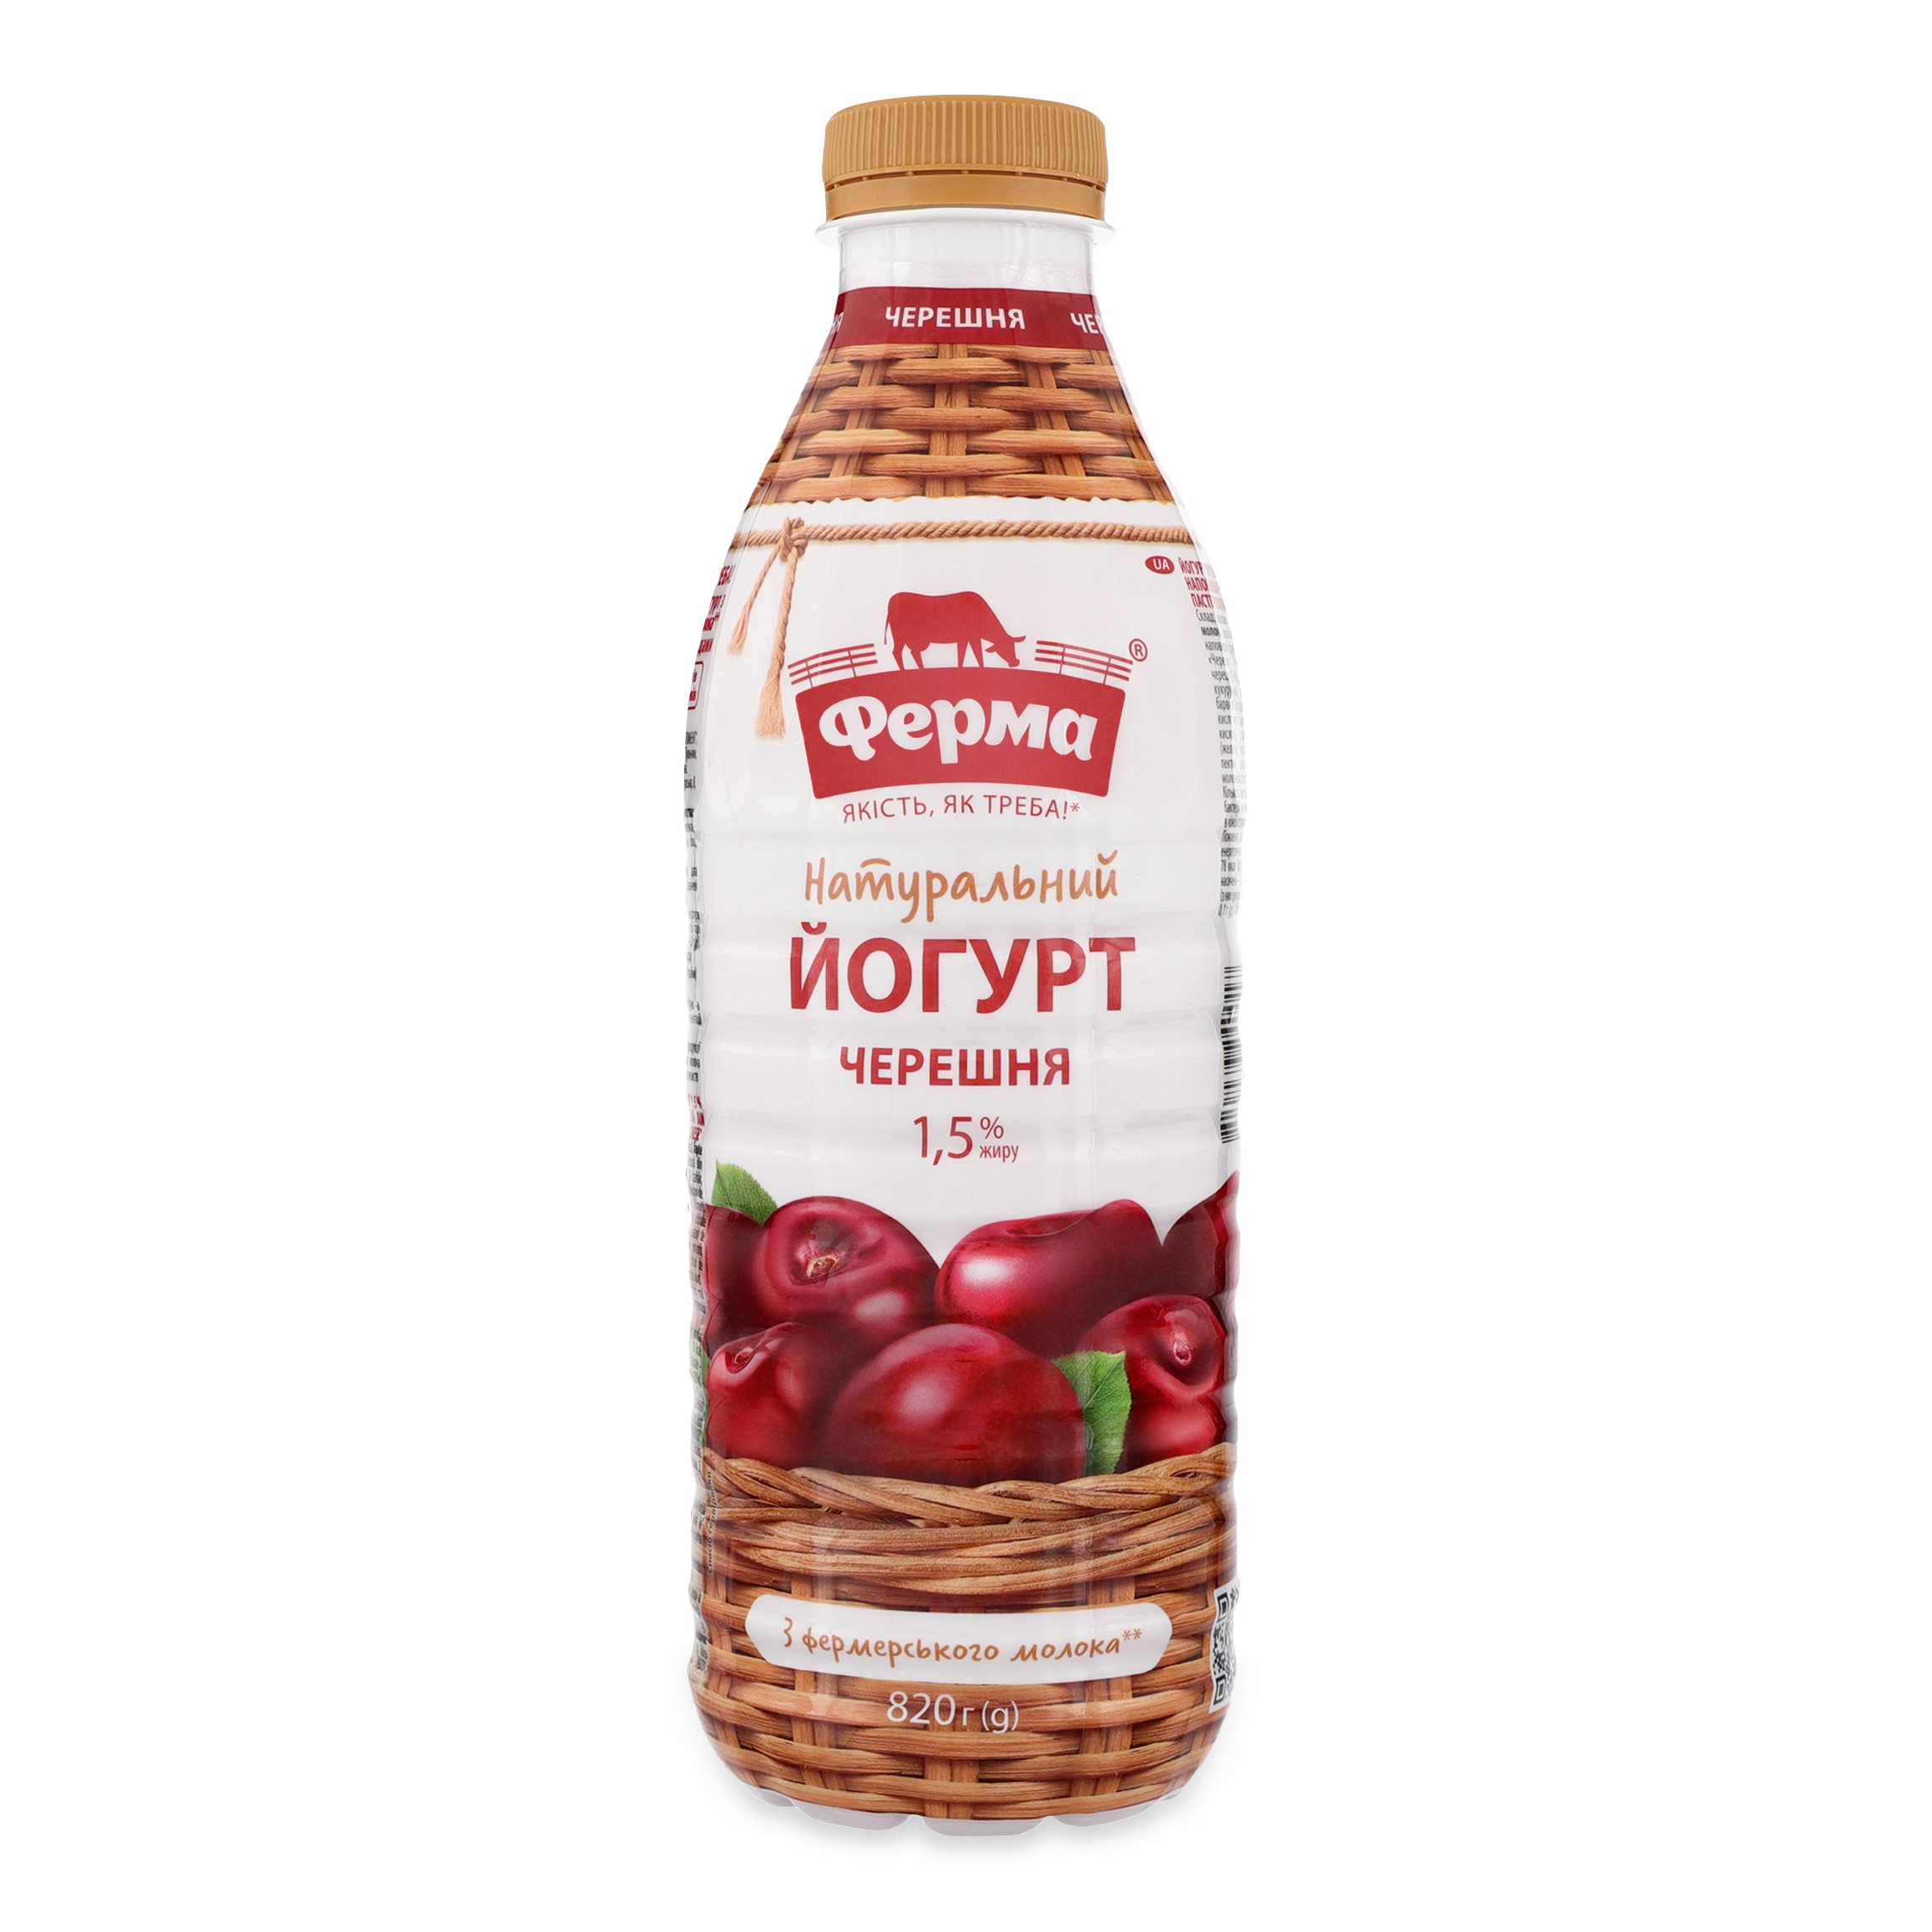 Ferma Cherry Flavored Yogurt 1,5% 820g